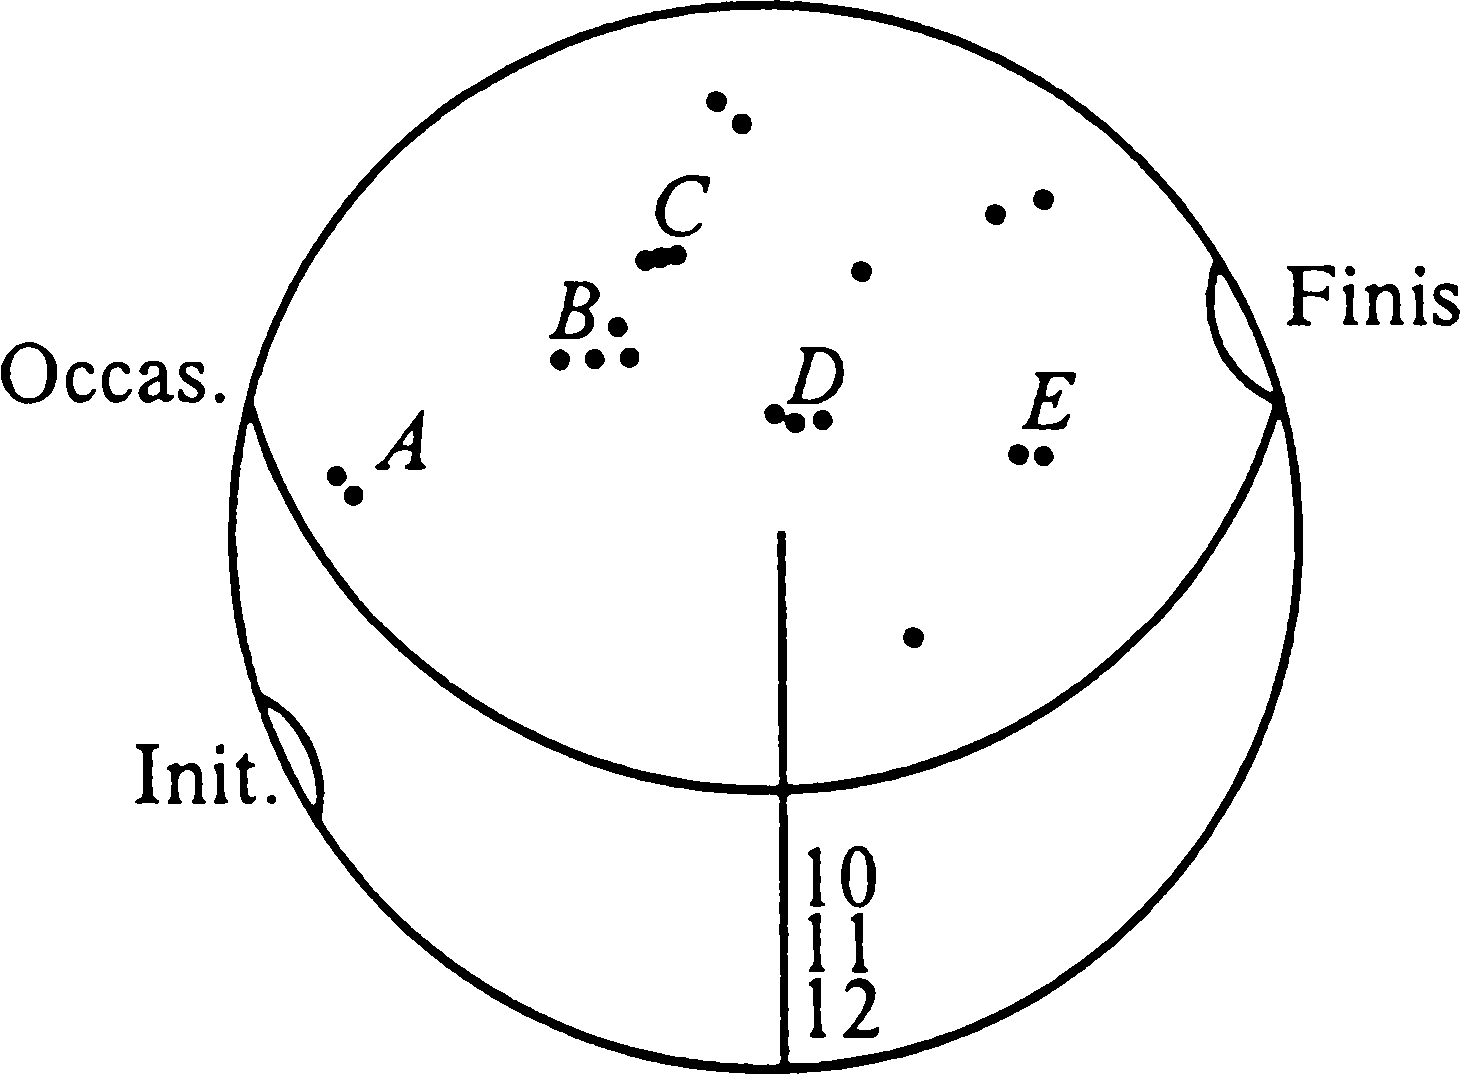 Фрагмент чертежа к наблюдению солнечного затмения. Изображение диска Солнца с группами пятен A, B, C, D, E. Указаны начало (Init.) и конец (Finis) затмения